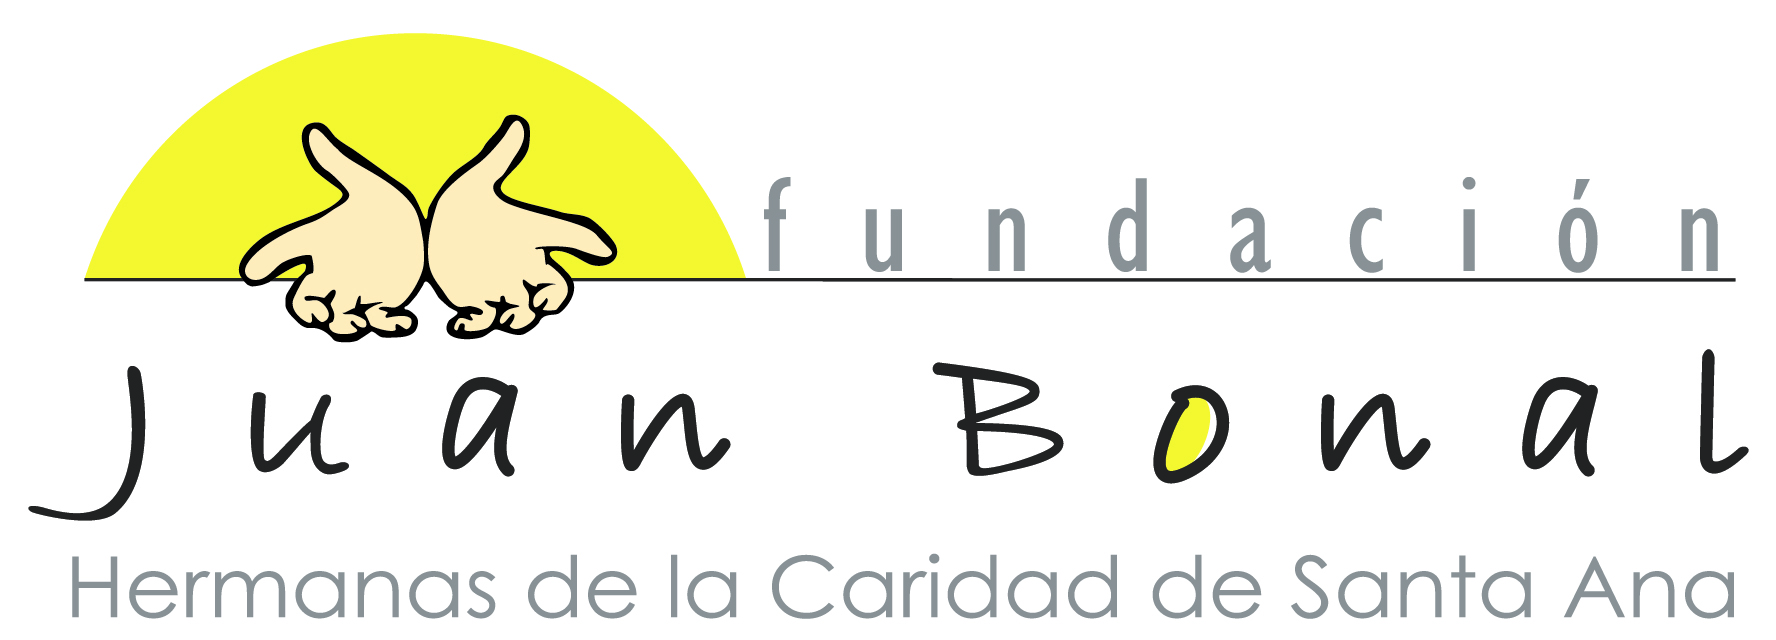 Logo Fundacin Juan Bonal